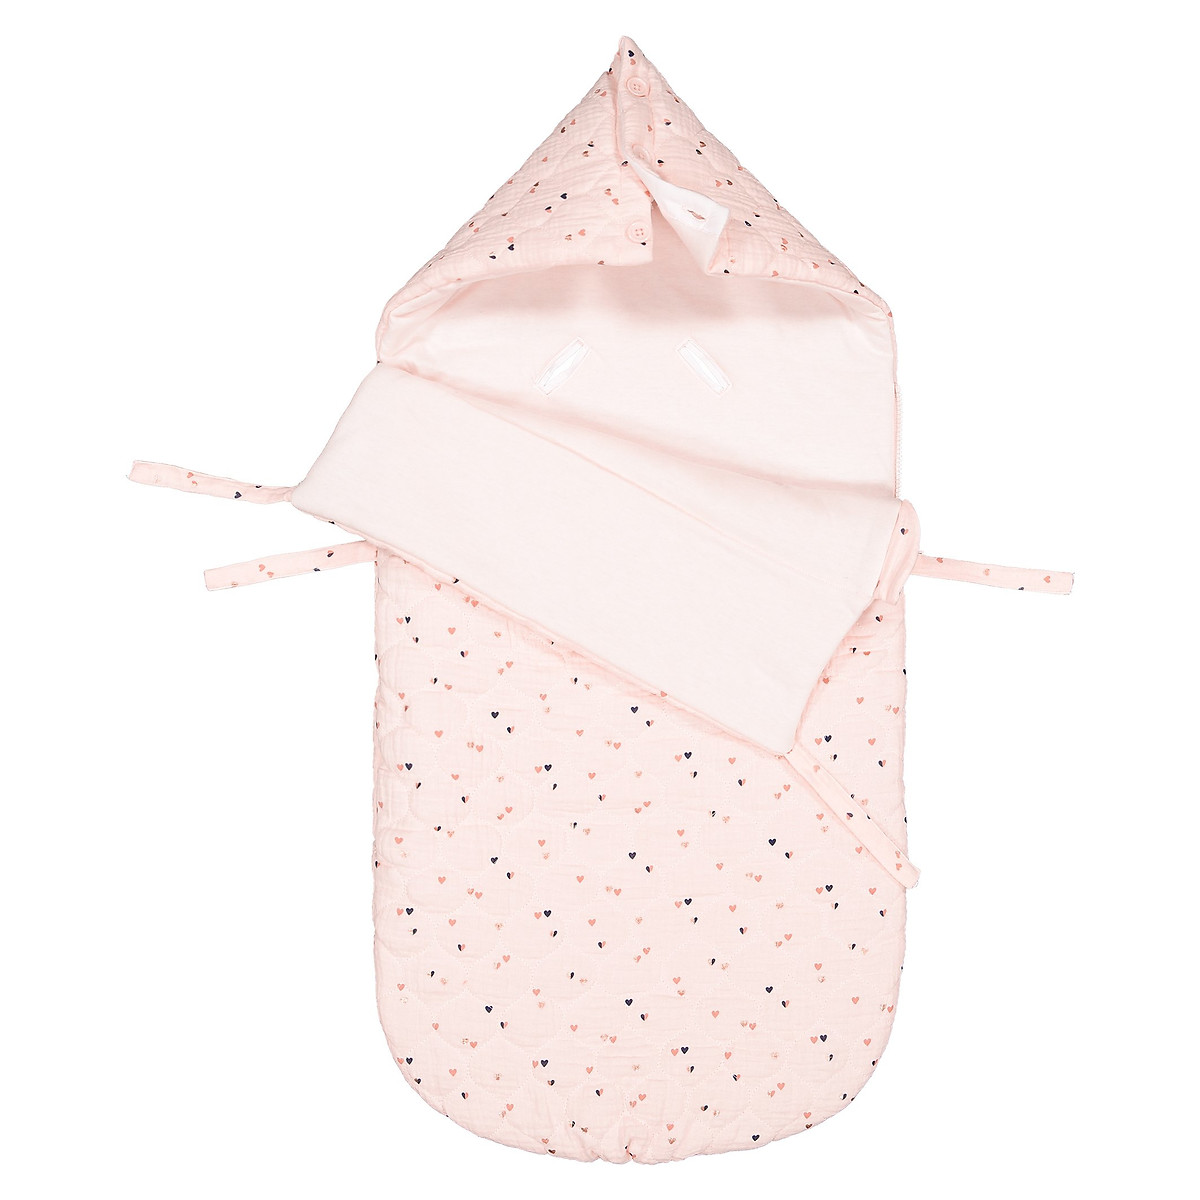 Конверт La Redoute Для новорожденных с капюшоном и рисунком единый размер розовый - фото 2